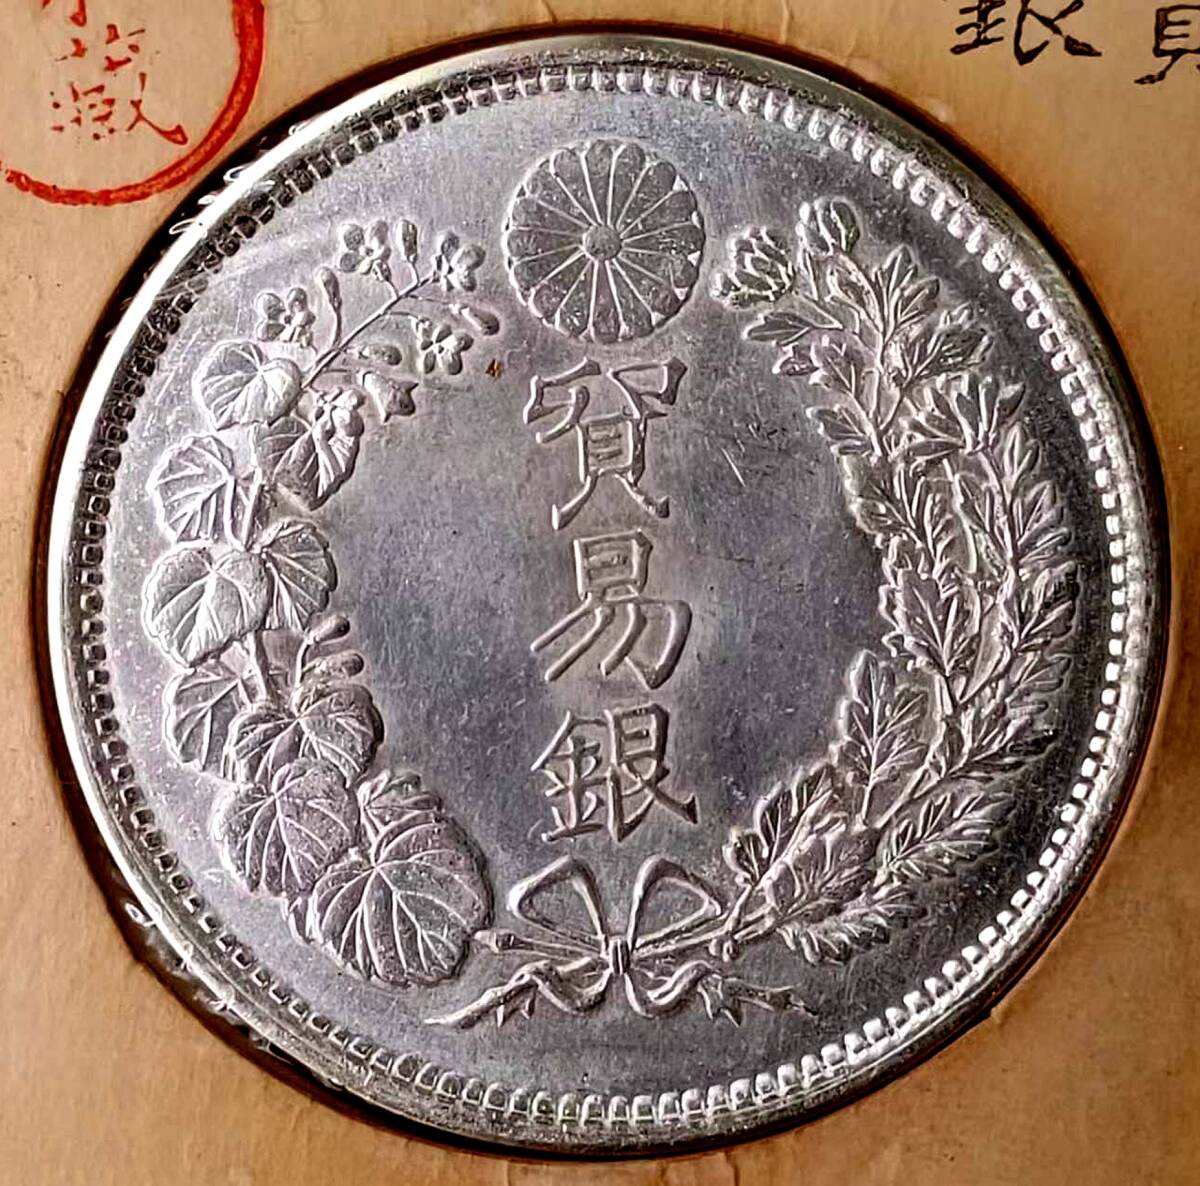 [ Izumi .] 1 jpy start Japan coin Meiji era trade silver large Japan Meiji 9 year asahi day dragon rotation light silver coin guarantee 